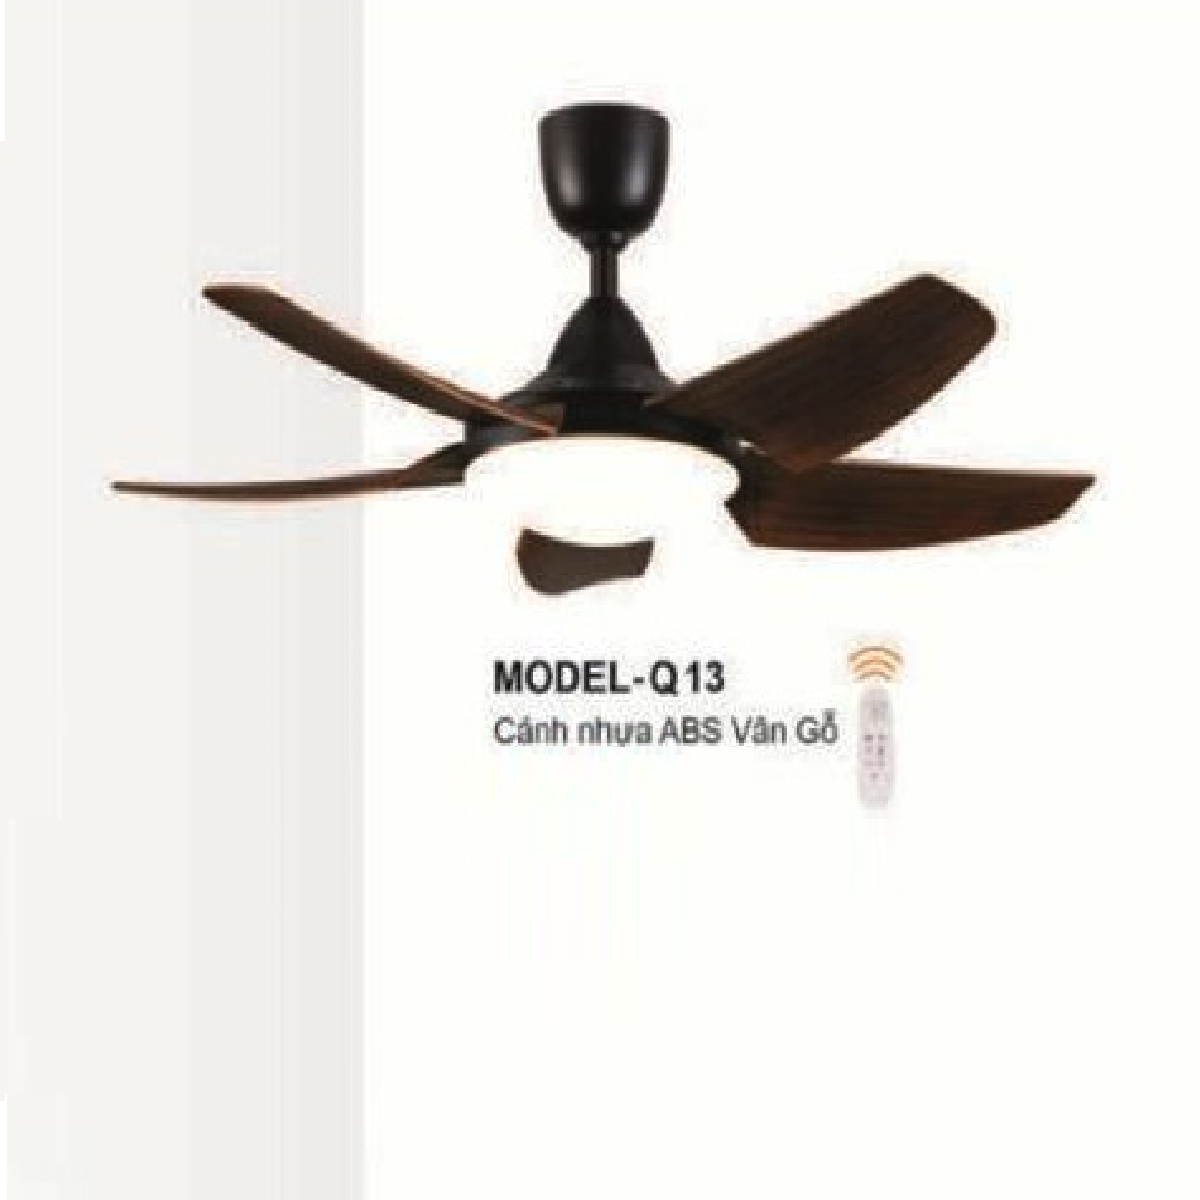 E - MODEL - Q13: Quạt trần đèn LED 5 cánh nhựa ABS màu Vân Gỗ